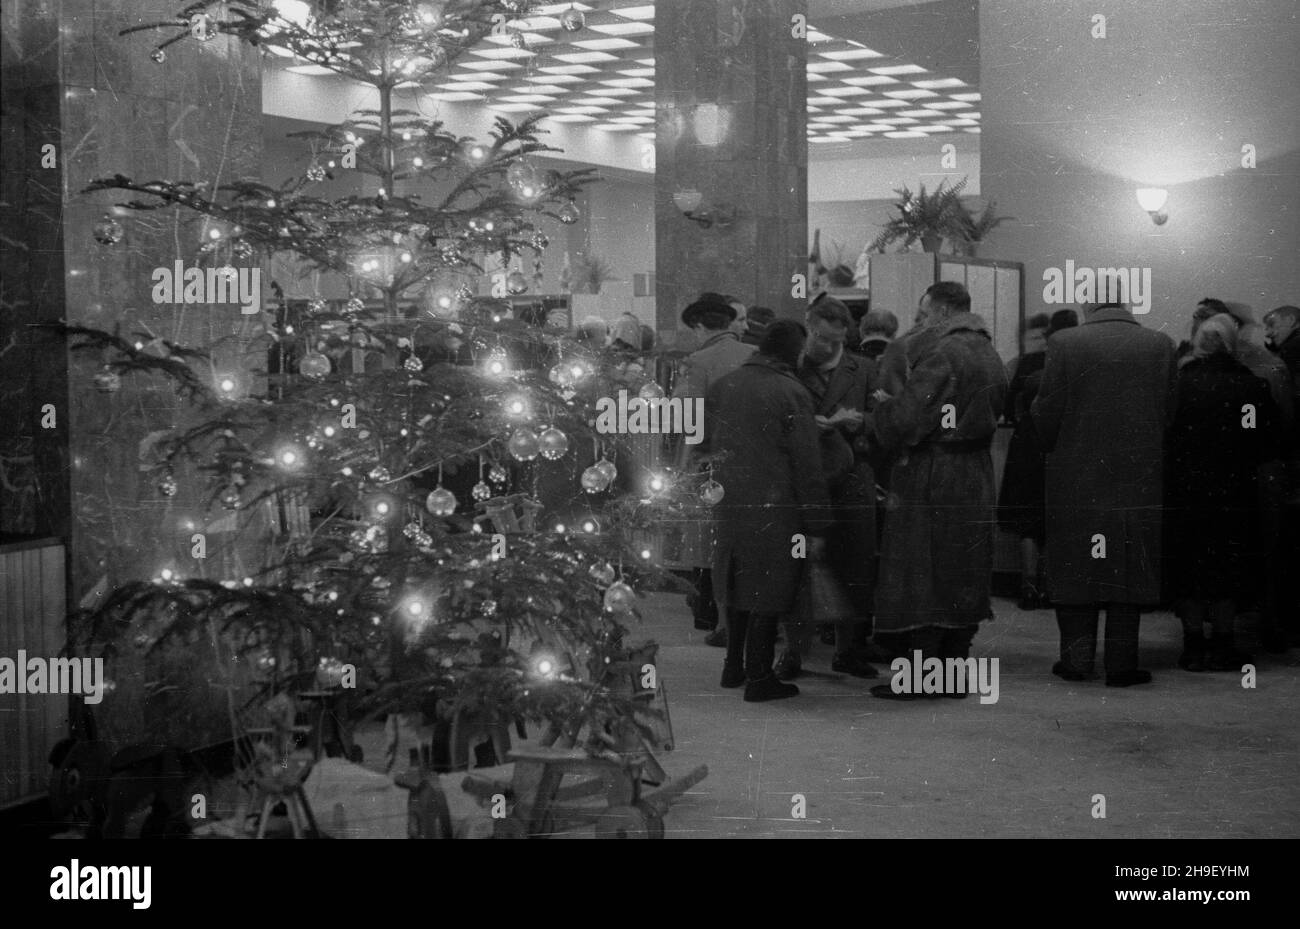 Warszawa, 1947-12. Œwi¹teczna dekoracja - choinka. bb/mgs  PAP    Dok³adny dzieñ wydarzenia nieustalony.      Warsaw, Dec. 1947. Christmas decoration - a Christmas tree.  bb/mgs  PAP Stock Photo